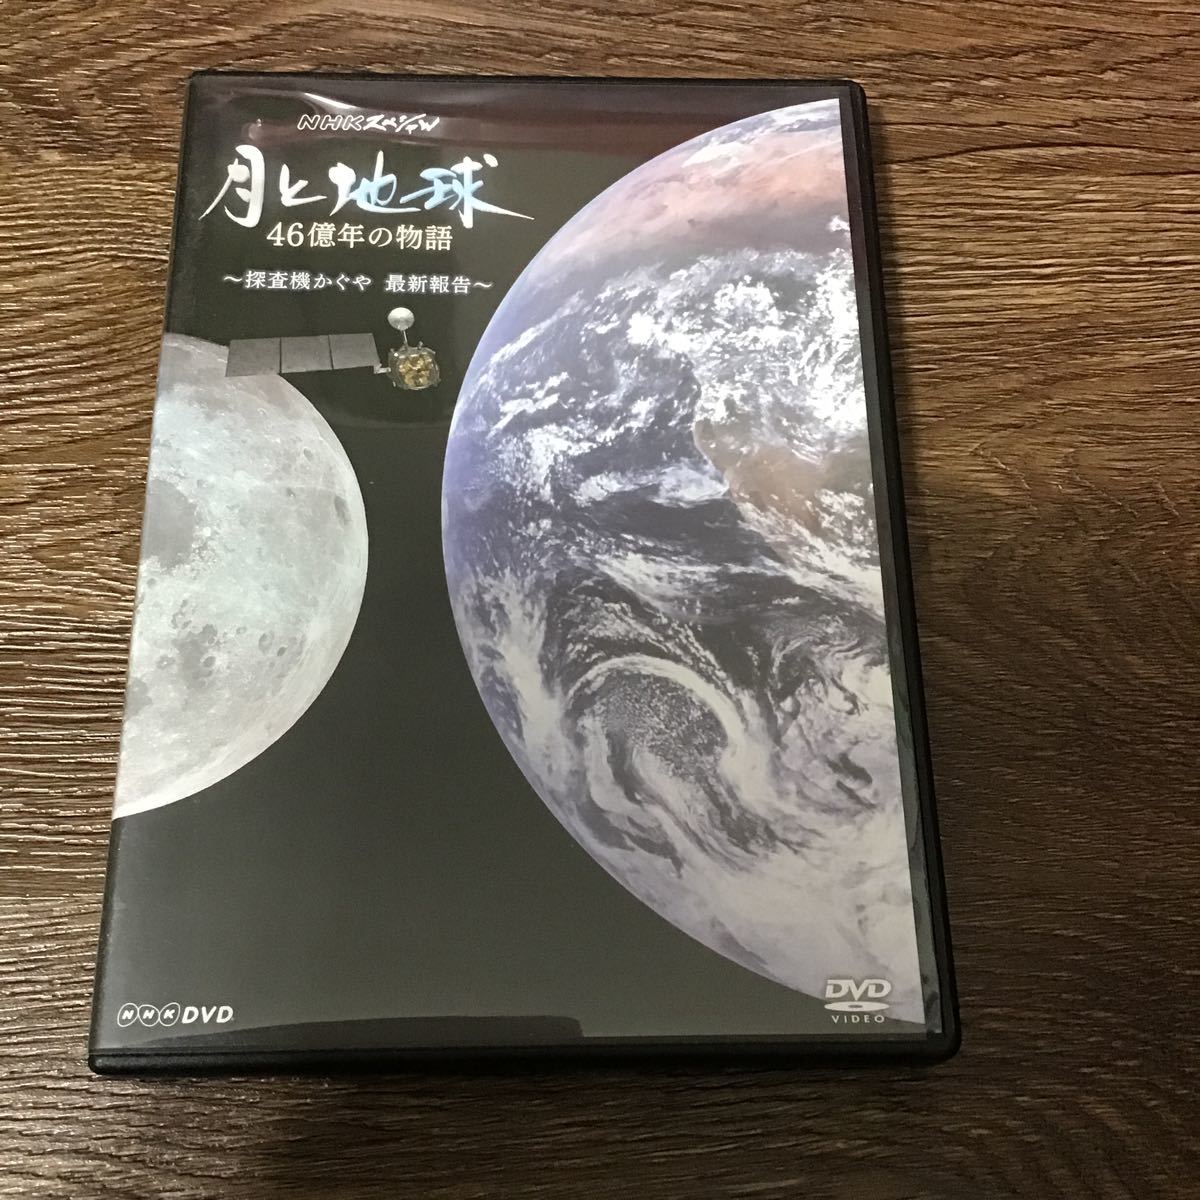 NHK специальный месяц . земля 46 сто миллионов год. история ~.. машина ... новейший комментарий ~ ( хобби | образование ). река Tama .( язык .) DVD